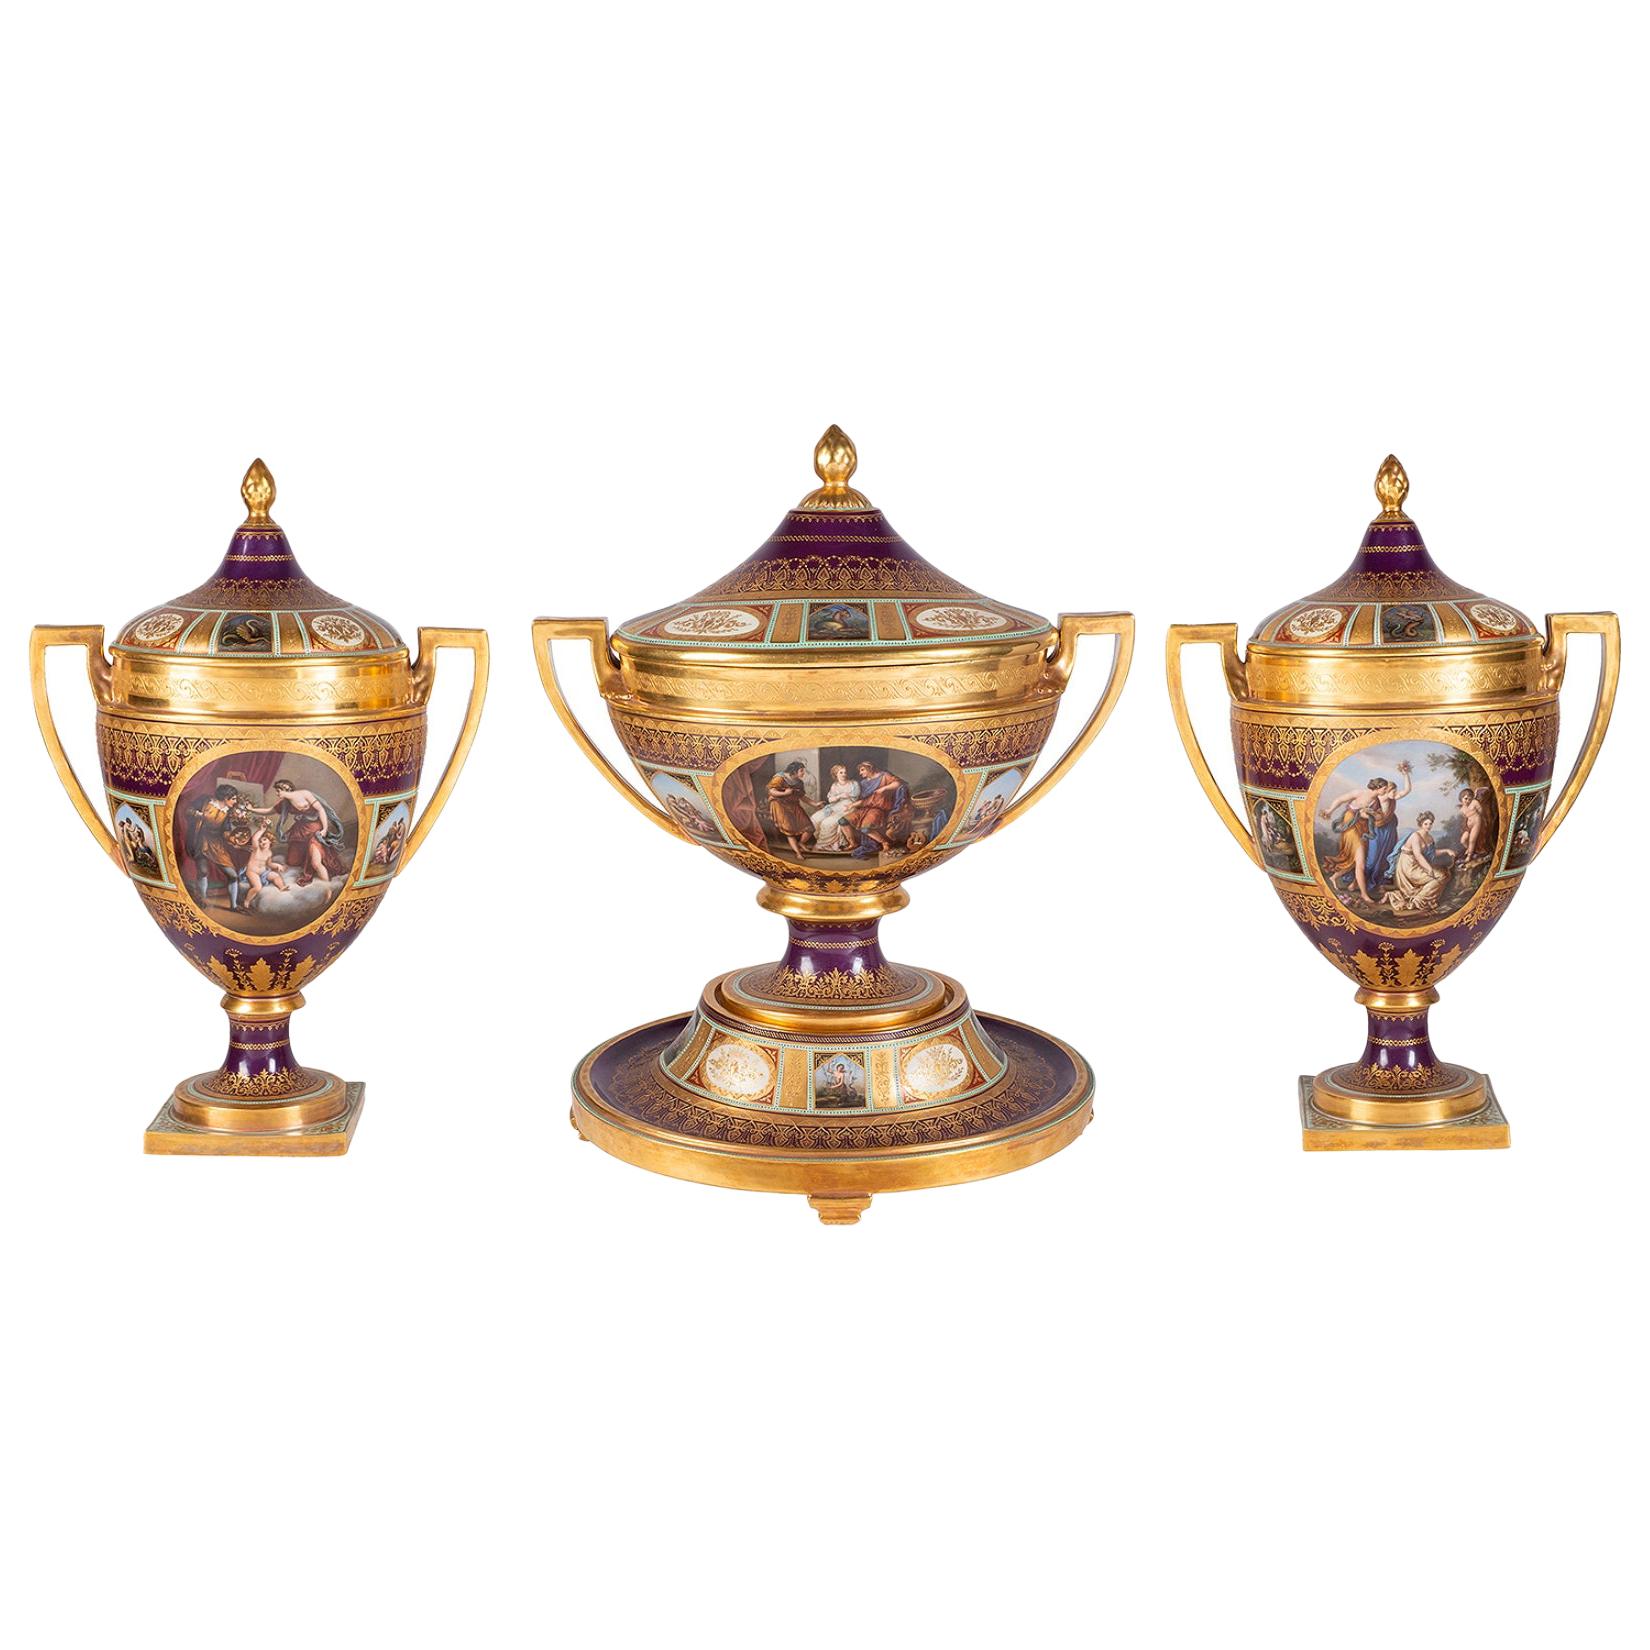 Seltene Porzellangarnitur im Wiener Stil des 19. Jahrhunderts mit drei großen Vasen mit Deckeln